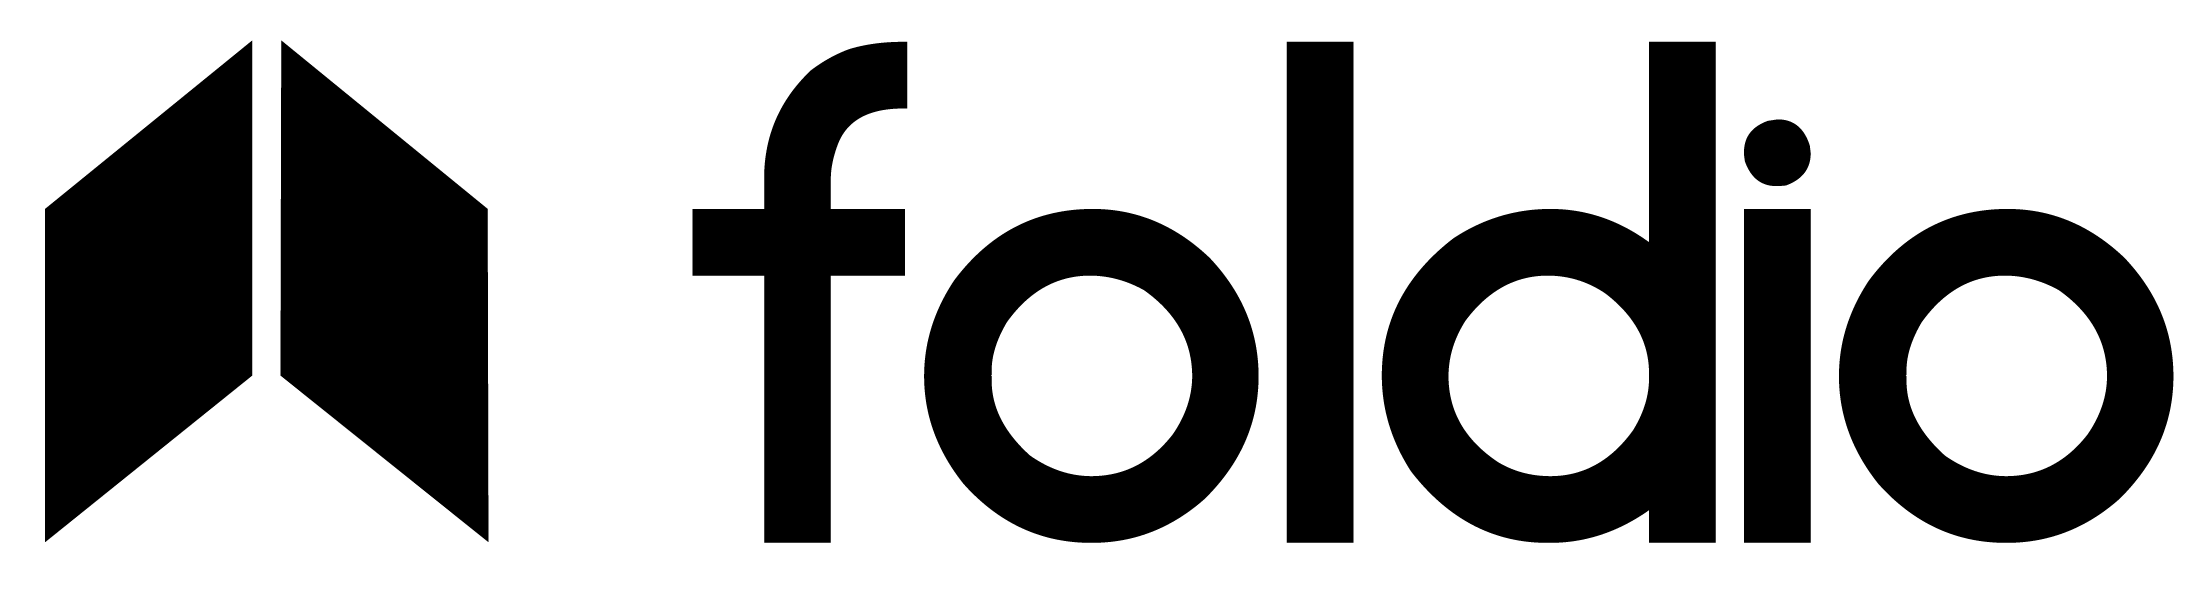 Foldio | Ürün Çekim Çadırı – Smart Turntable 360 Derece Ürün Fotoğraf/Video Çekimi – Ürün Fotoğraf Çekme Çadırı – Ürün Fotoğraf Çekimi-360 Derece Ürün Tanıtımı